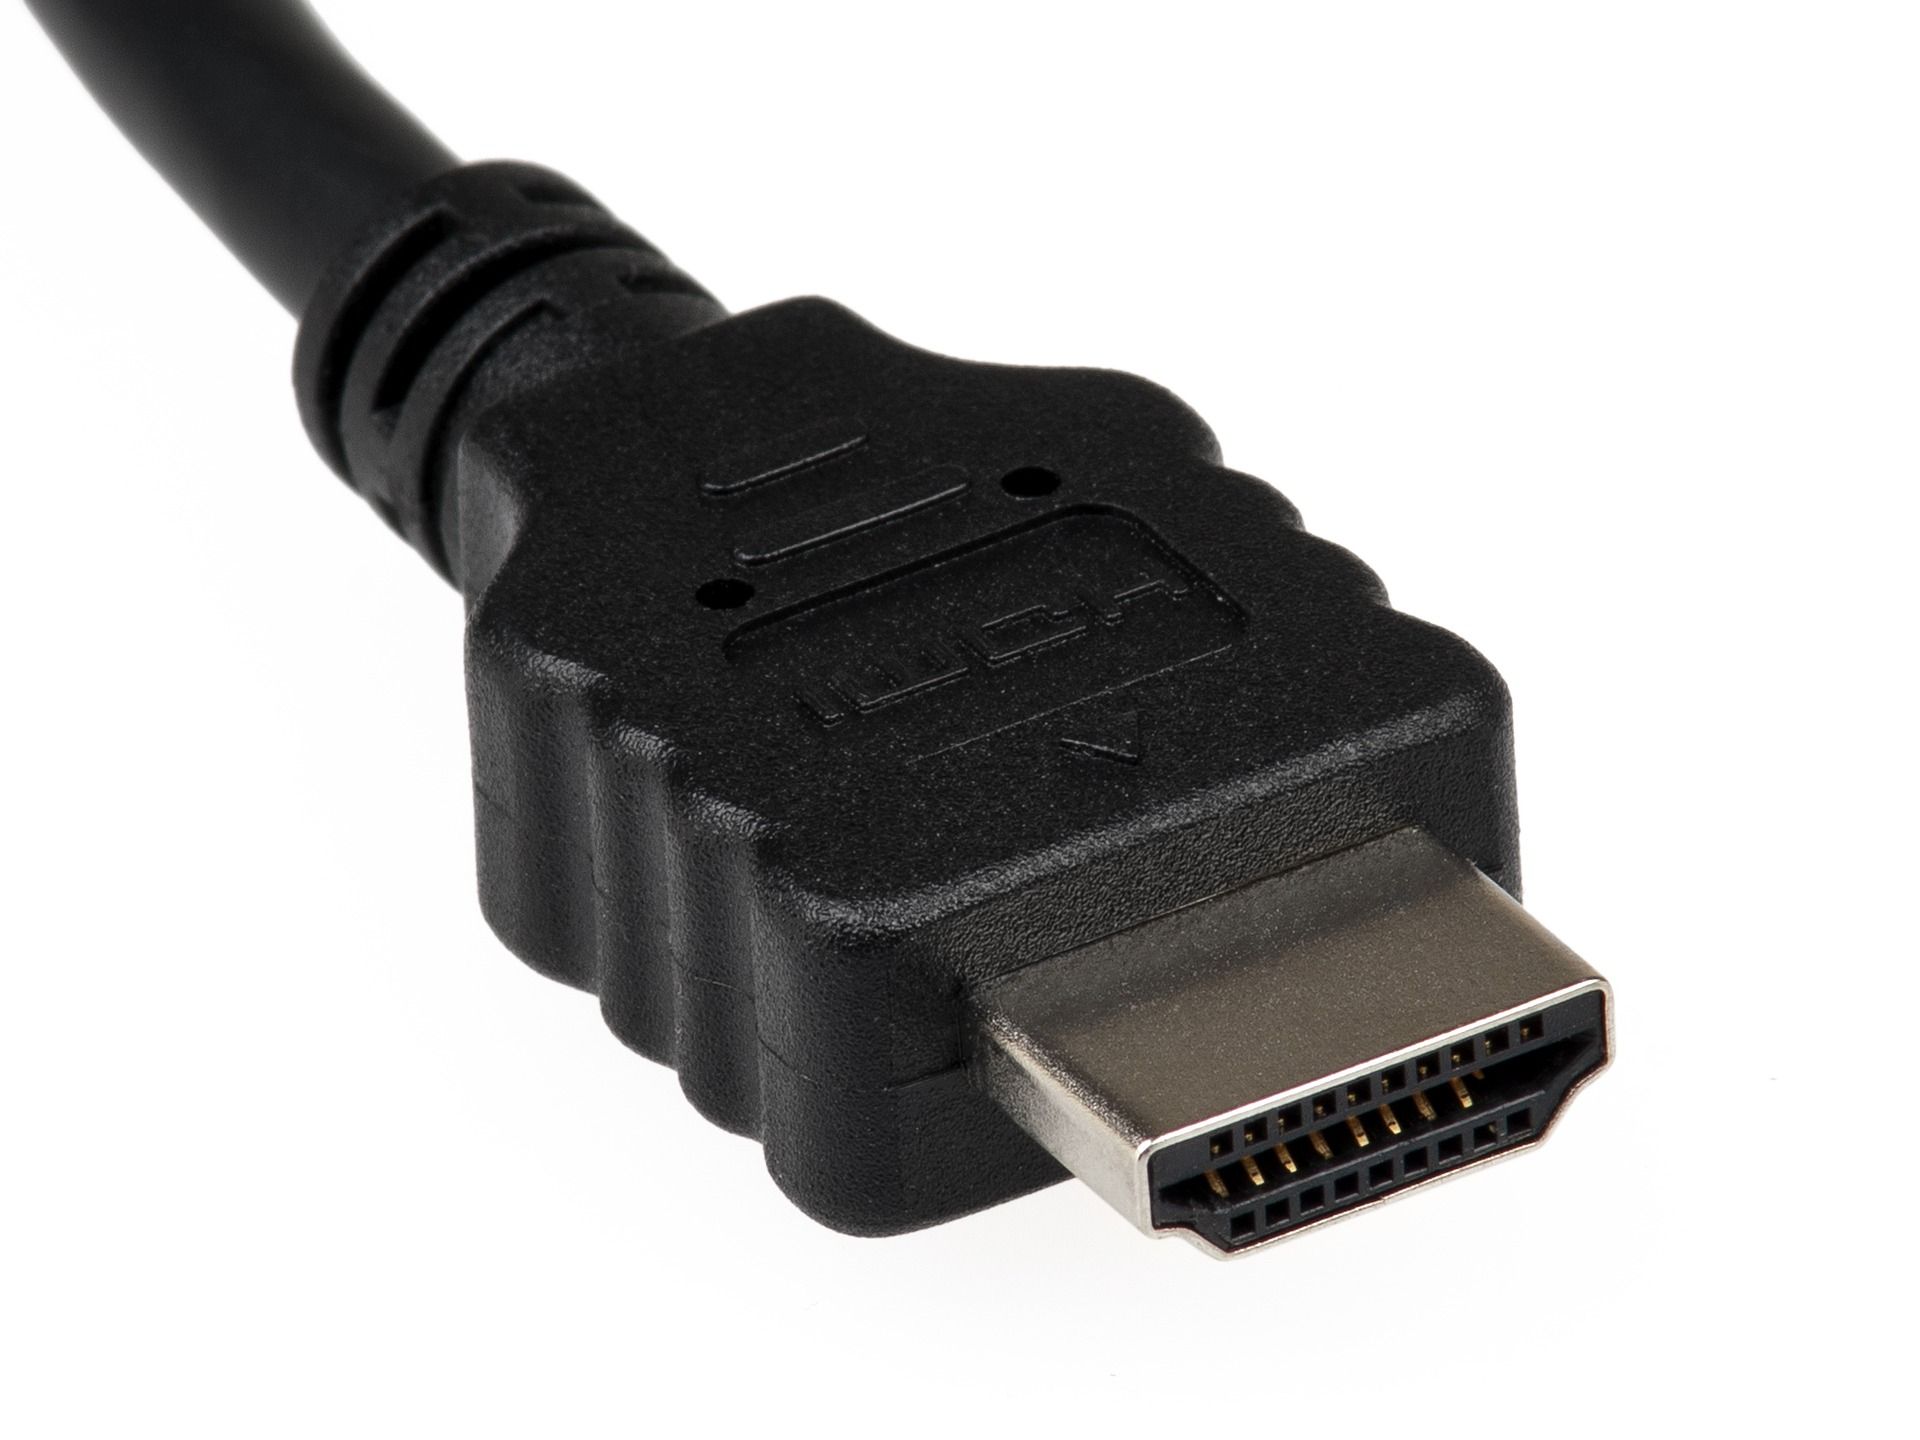 HDMI Cable Head - Come funzionano gli splitter HDMI e possono ridurre l’ingombro dei cavi?